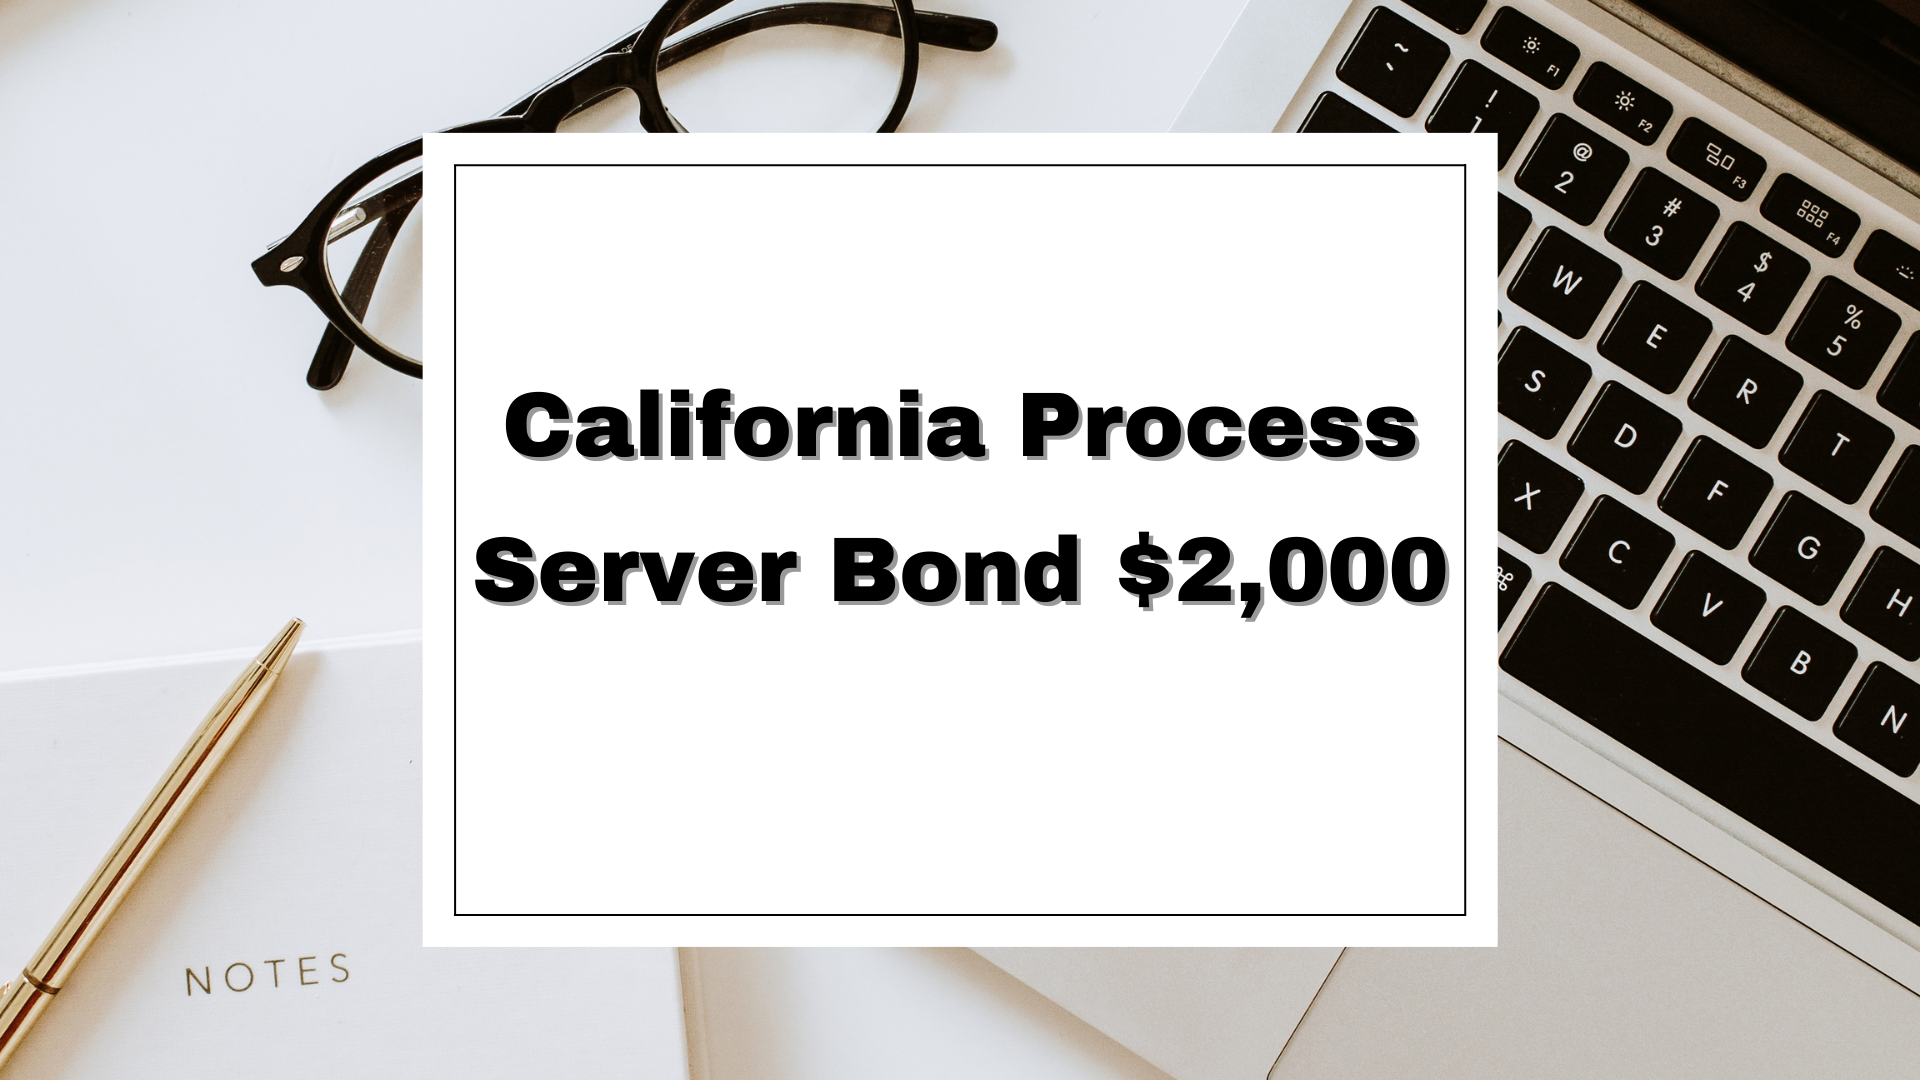 California Process Server Bond $2,000